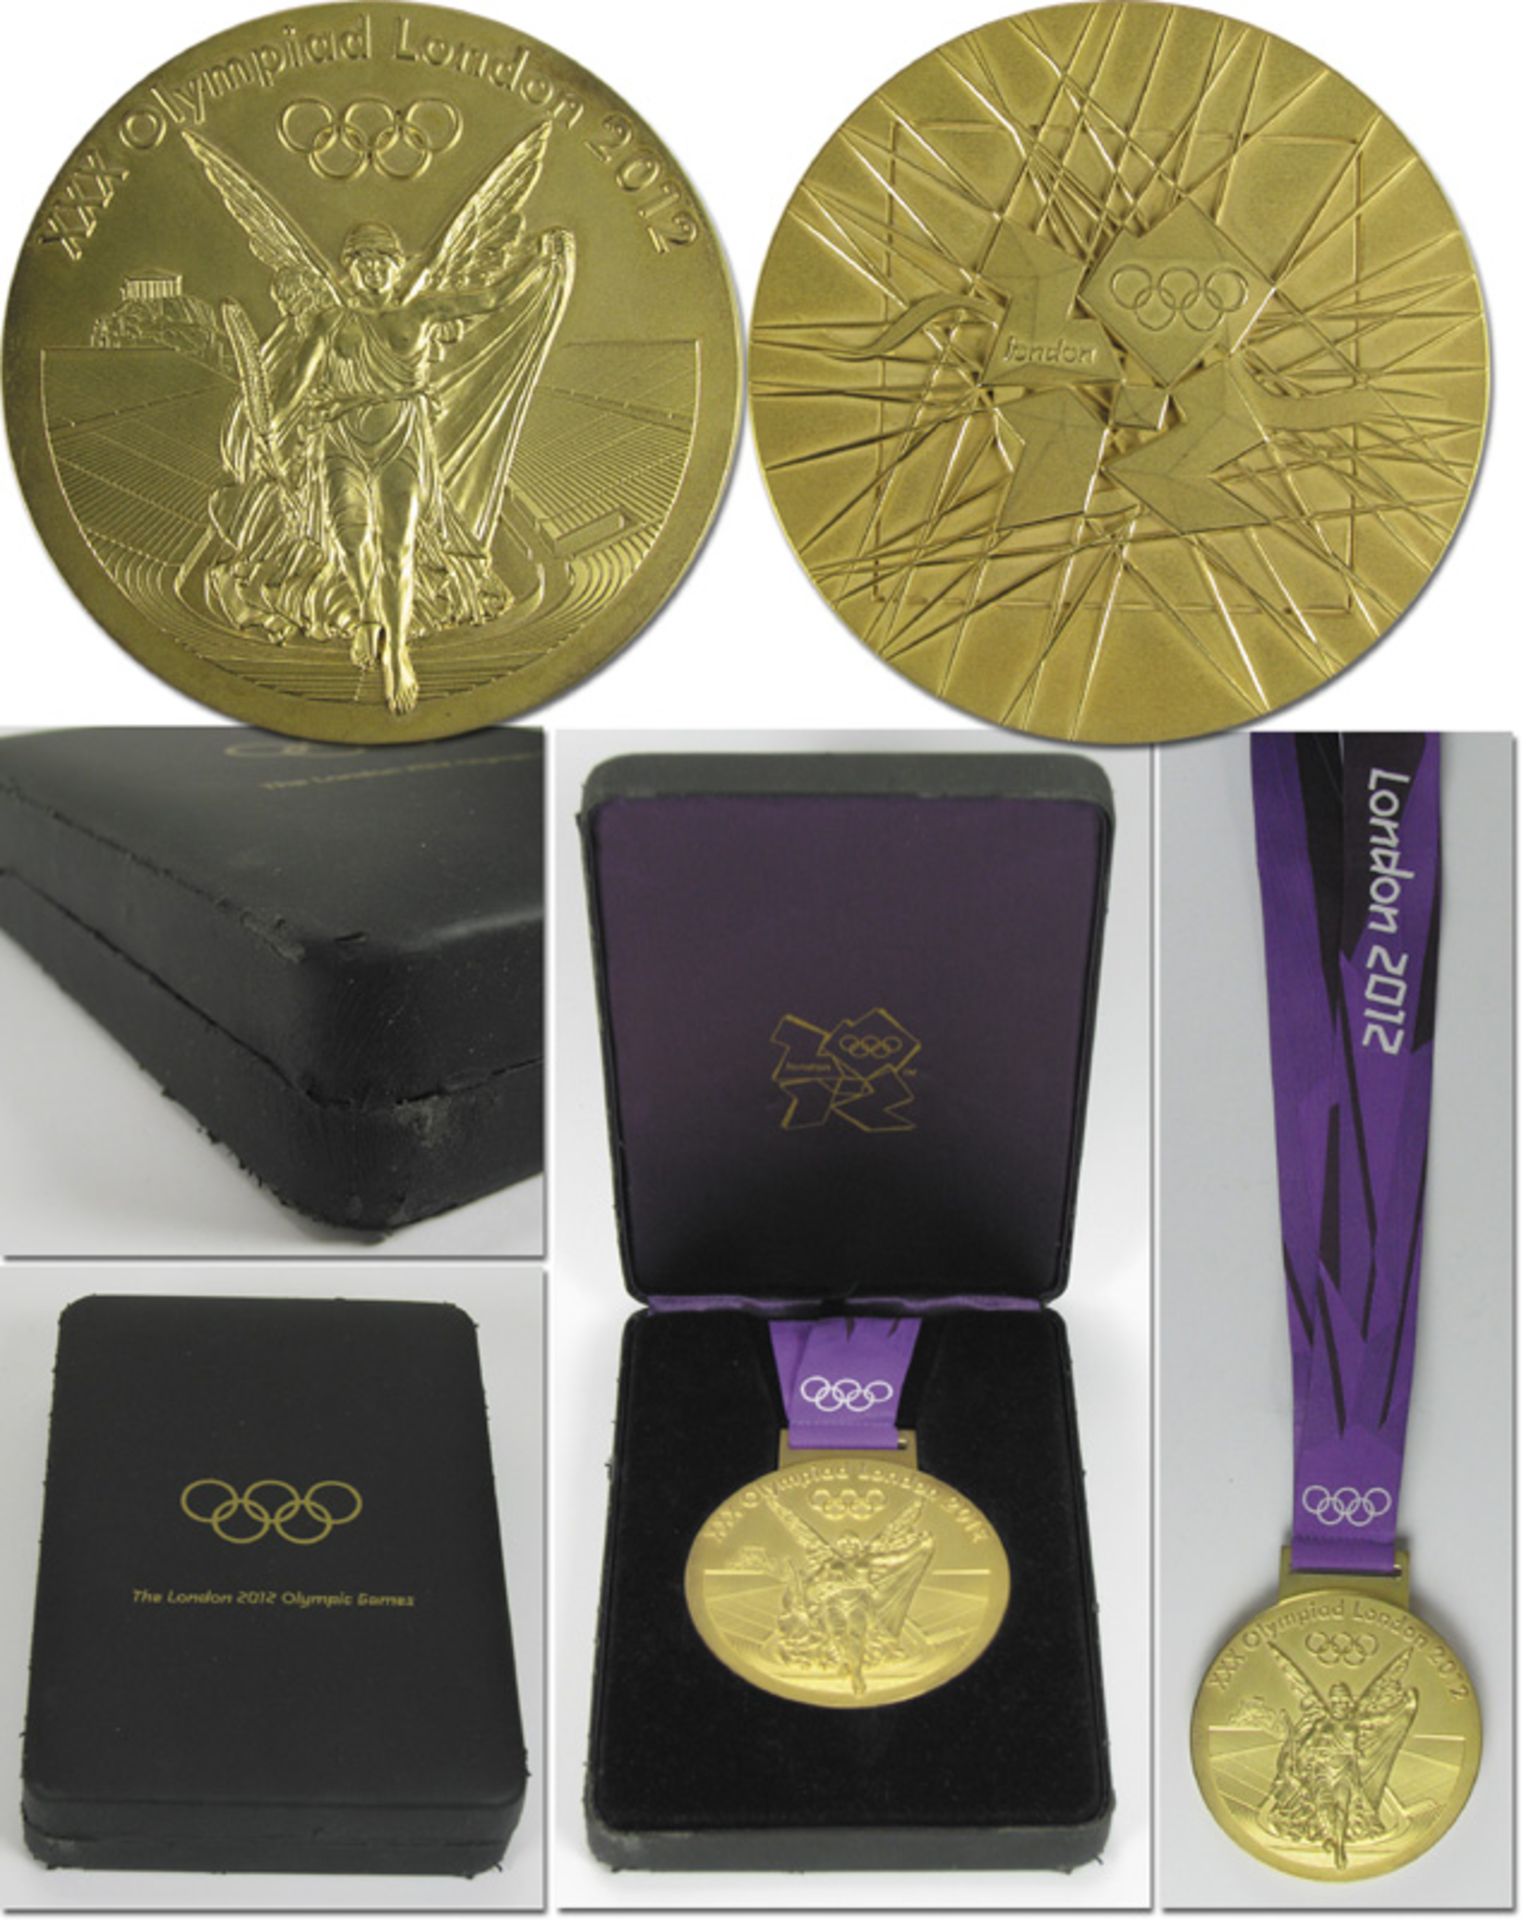 Olympic Games London 2012 Gold Winner´s Medal - Original winner's medal from the Olympic Games in Lo